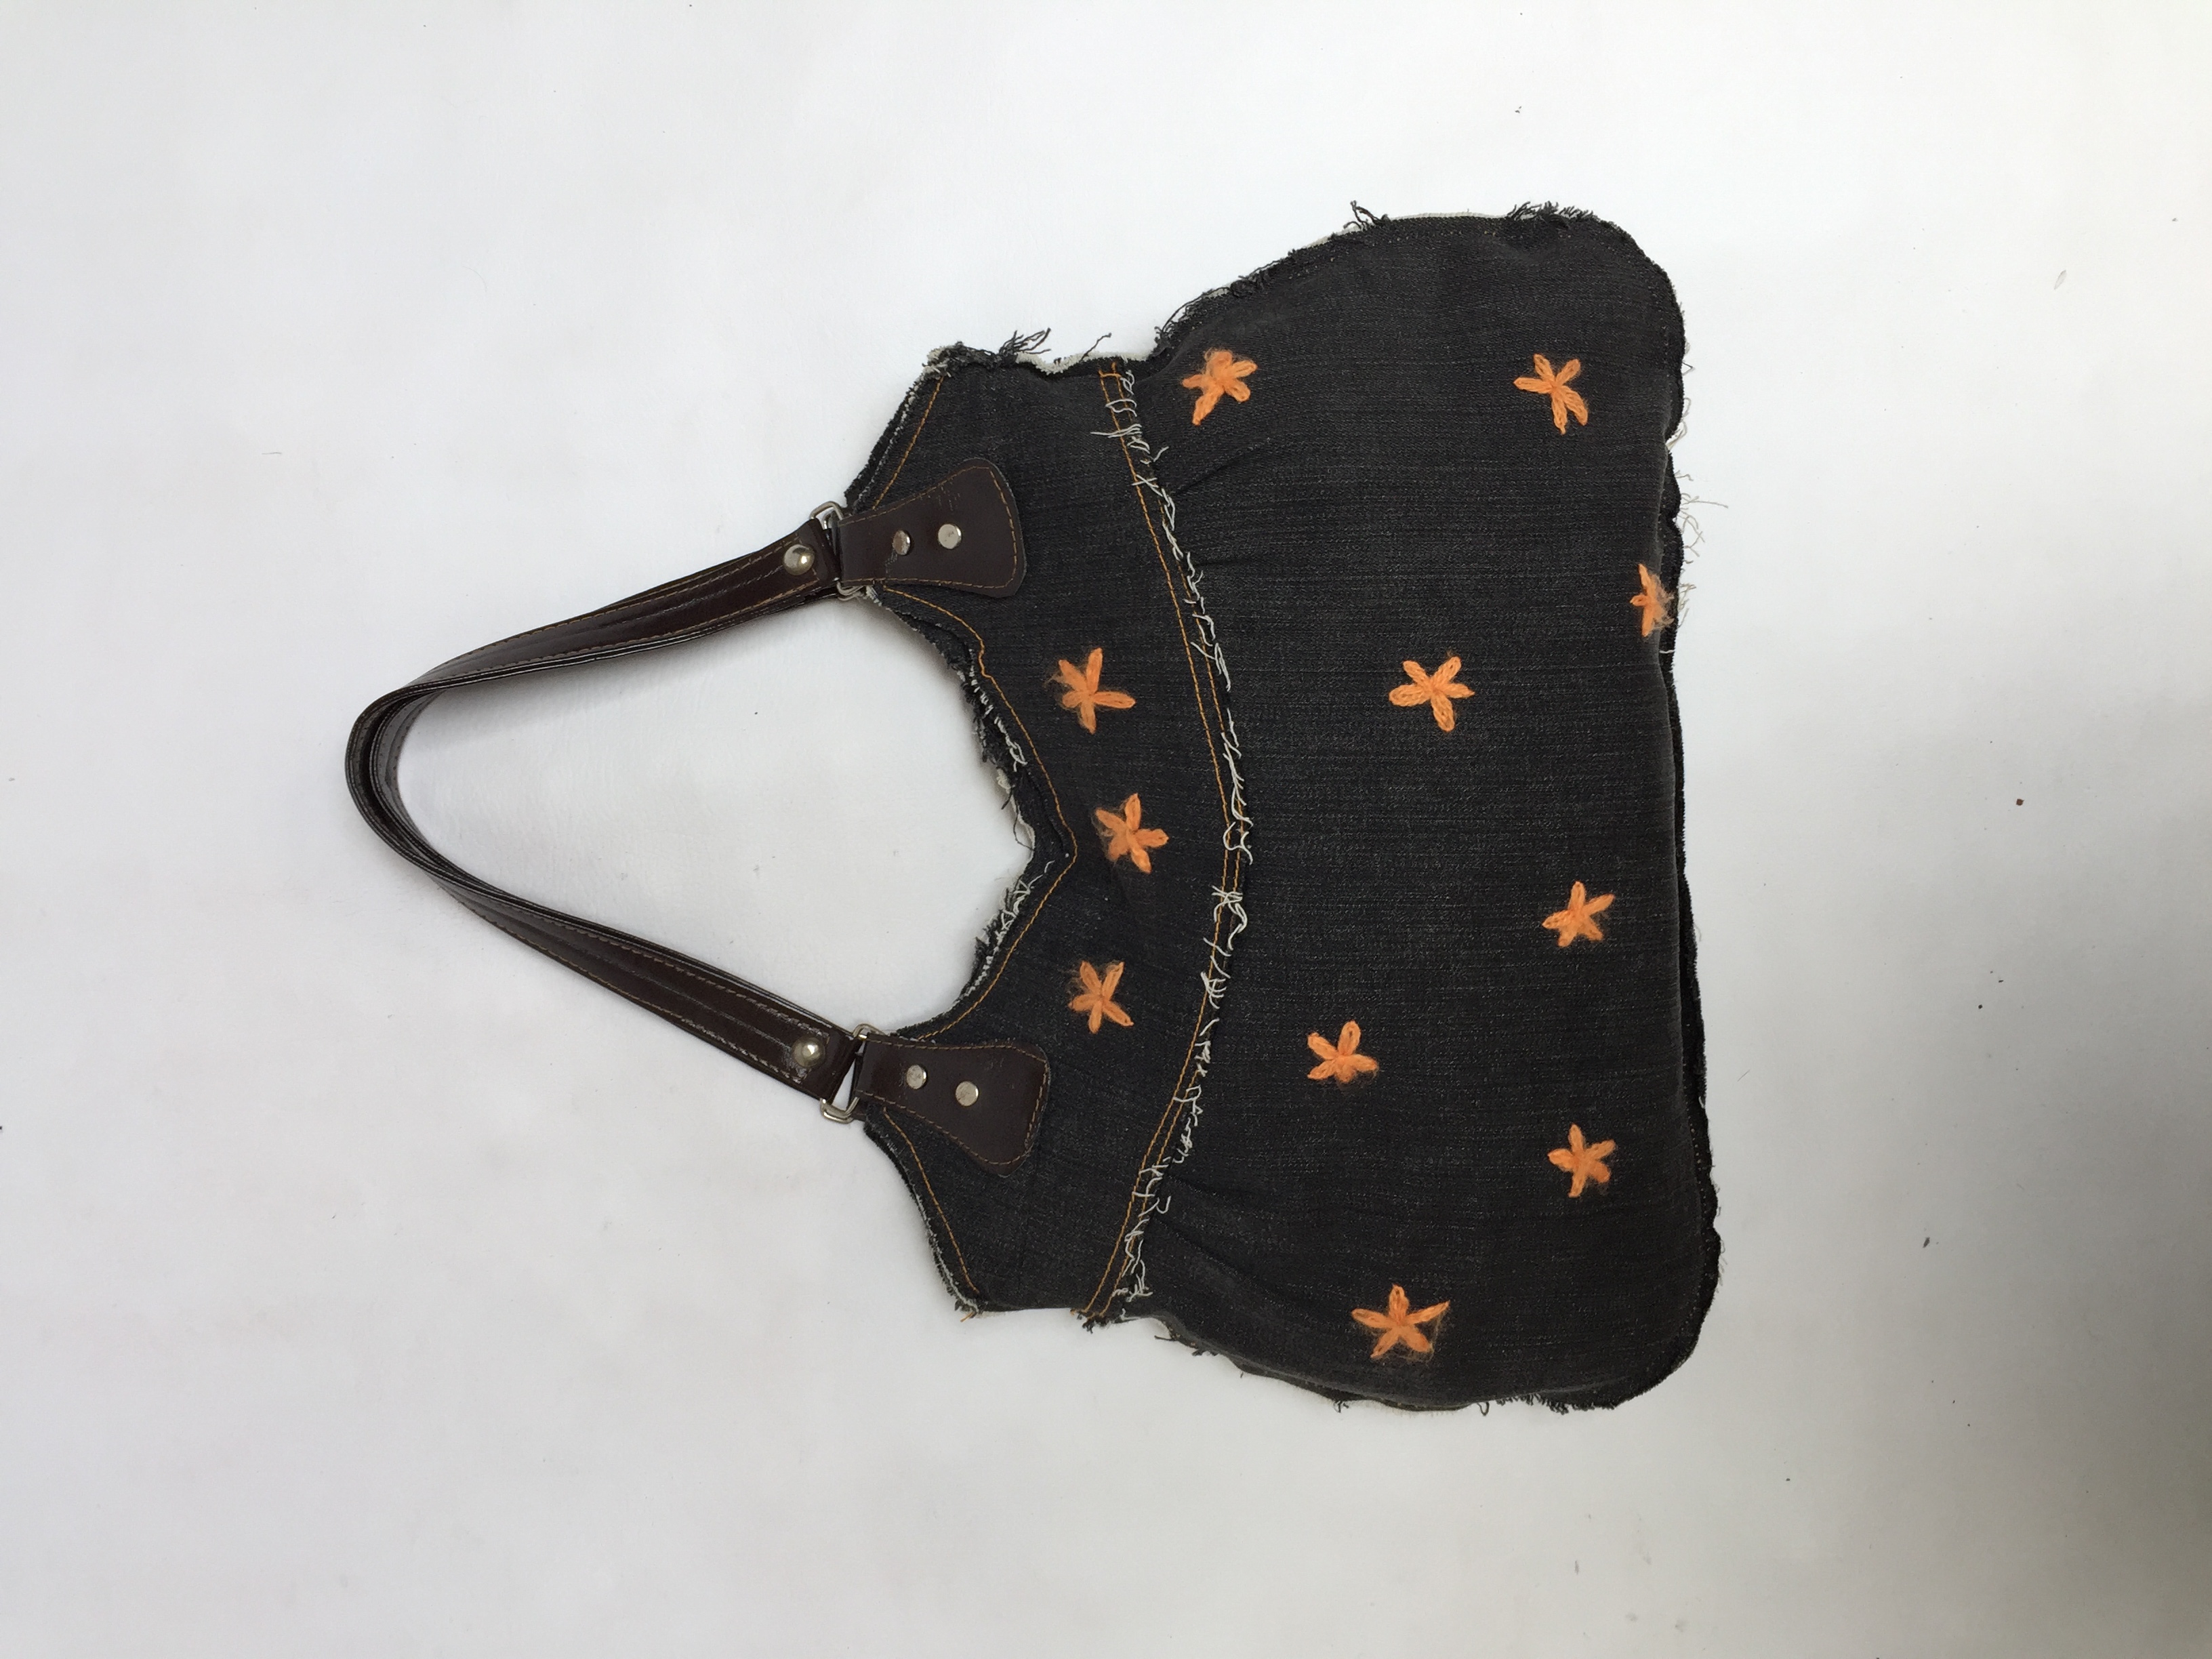 Bolso de jean con flores bordadas en lana naranja y bordes deshilachados, asas marrones y cierre negro, lleva forro. Estado: 9.5/10
Alto: 27 cm
Largo: 43 cm